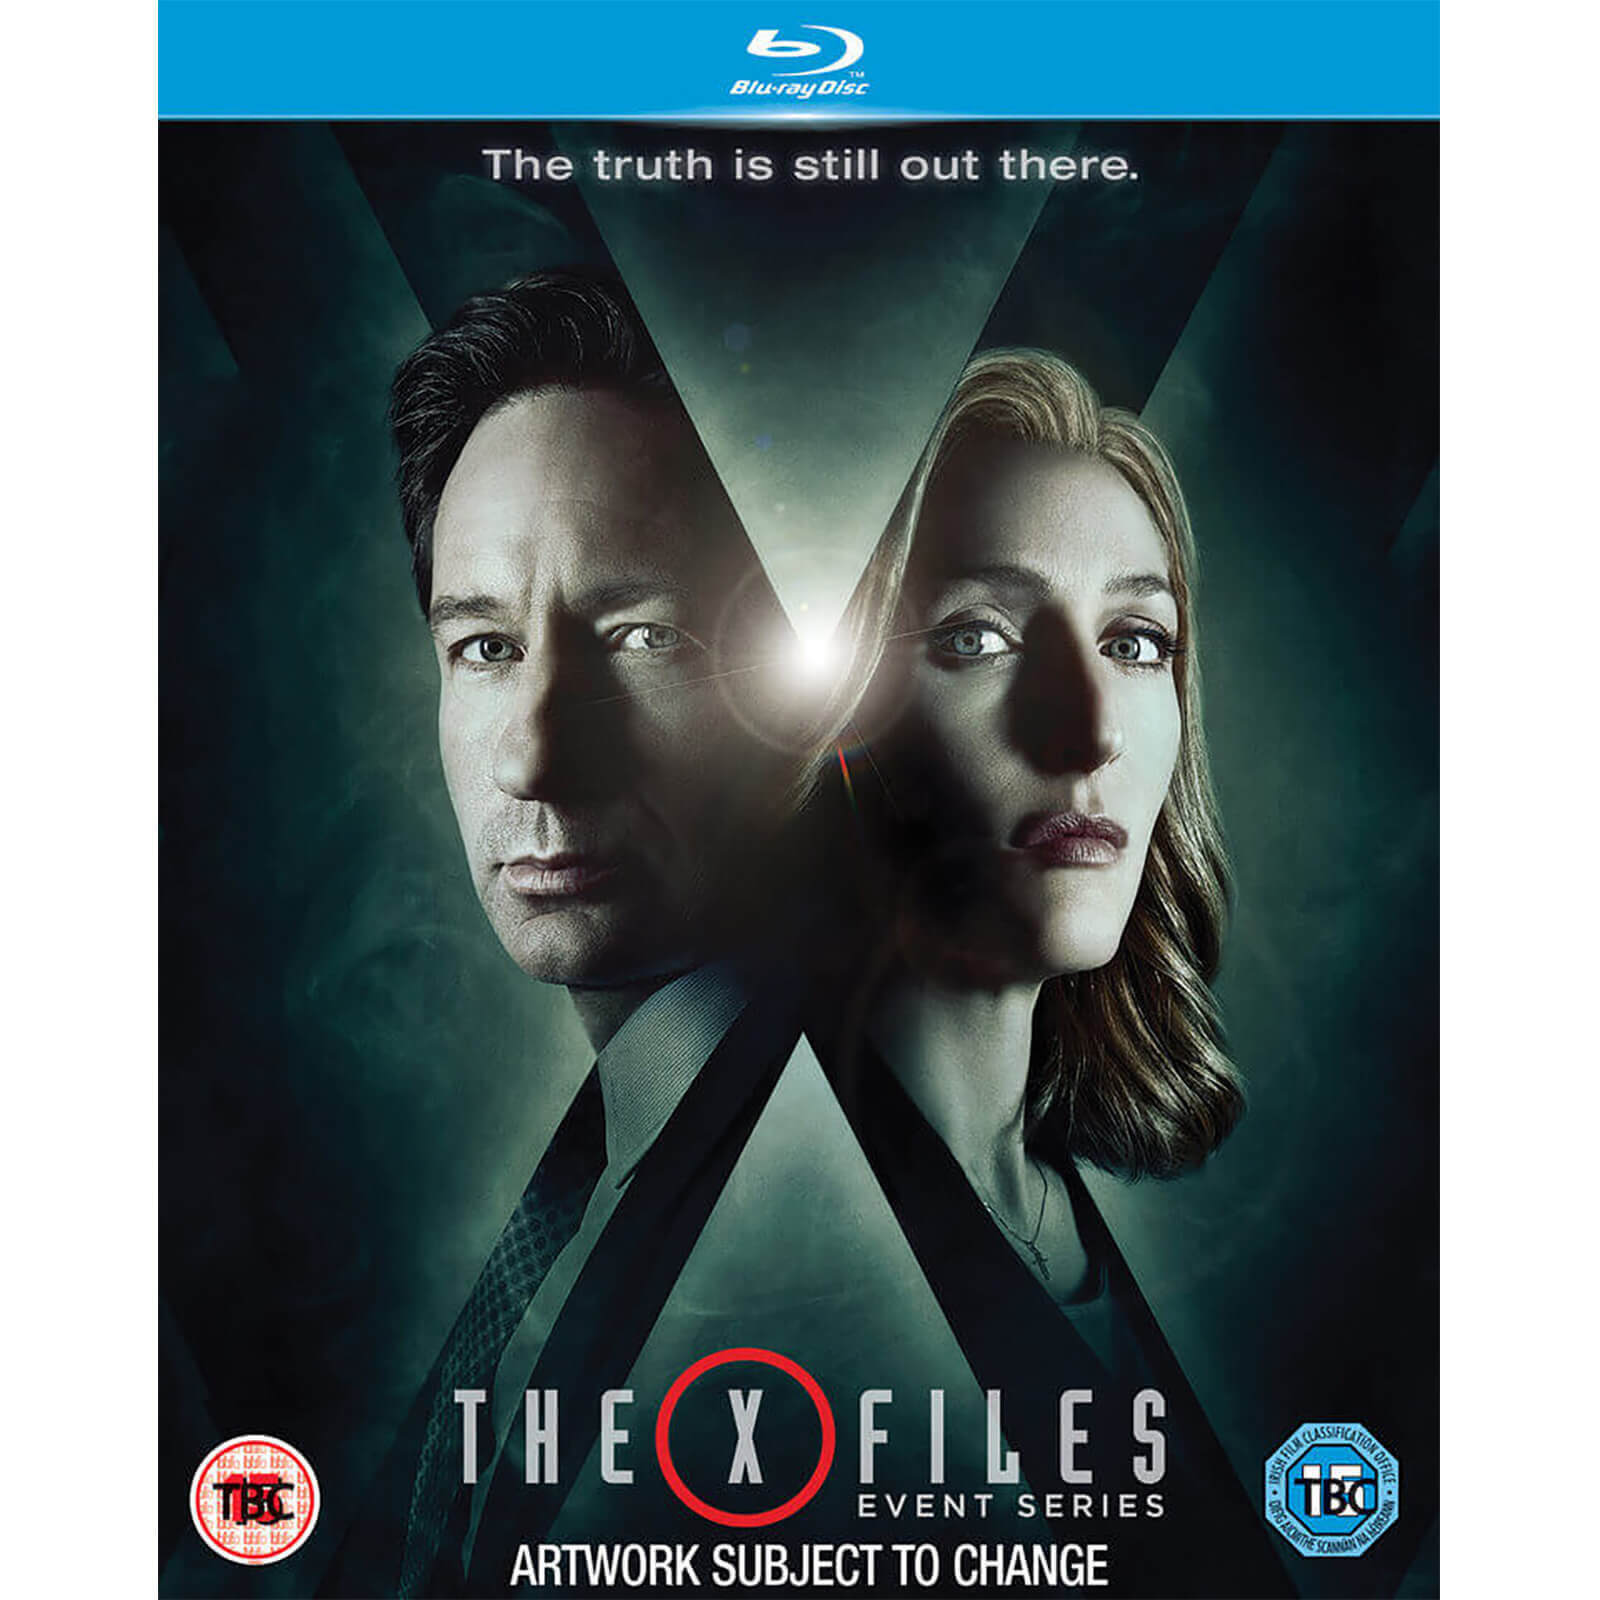 X-Files Event Series von 20th Century Fox